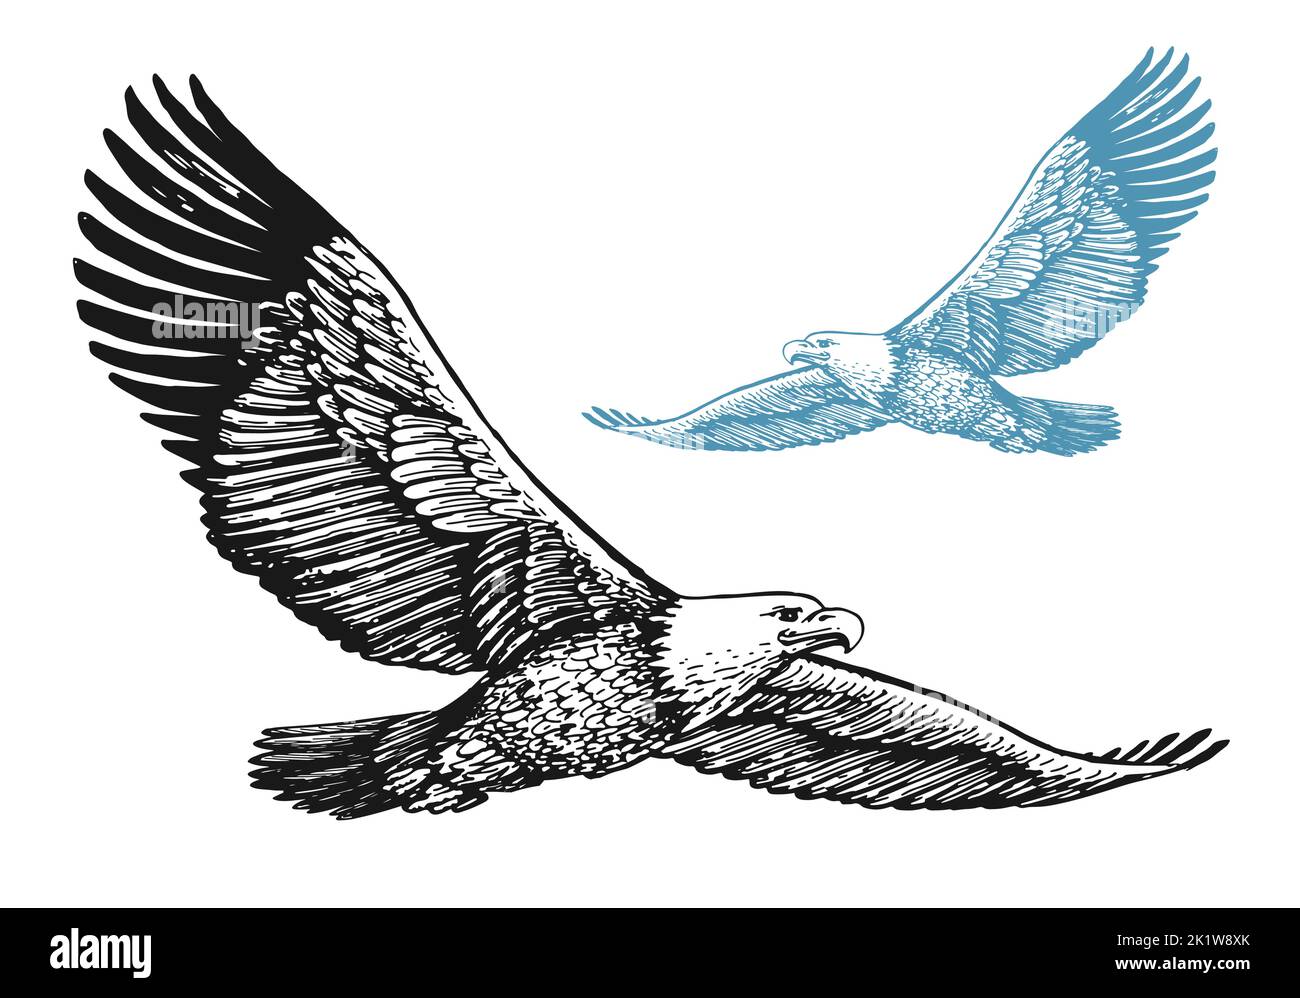 Águila calva con alas extendidas en vuelo aisladas sobre fondo blanco. Ilustración vectorial de pájaro en estilo de grabado vintage Ilustración del Vector